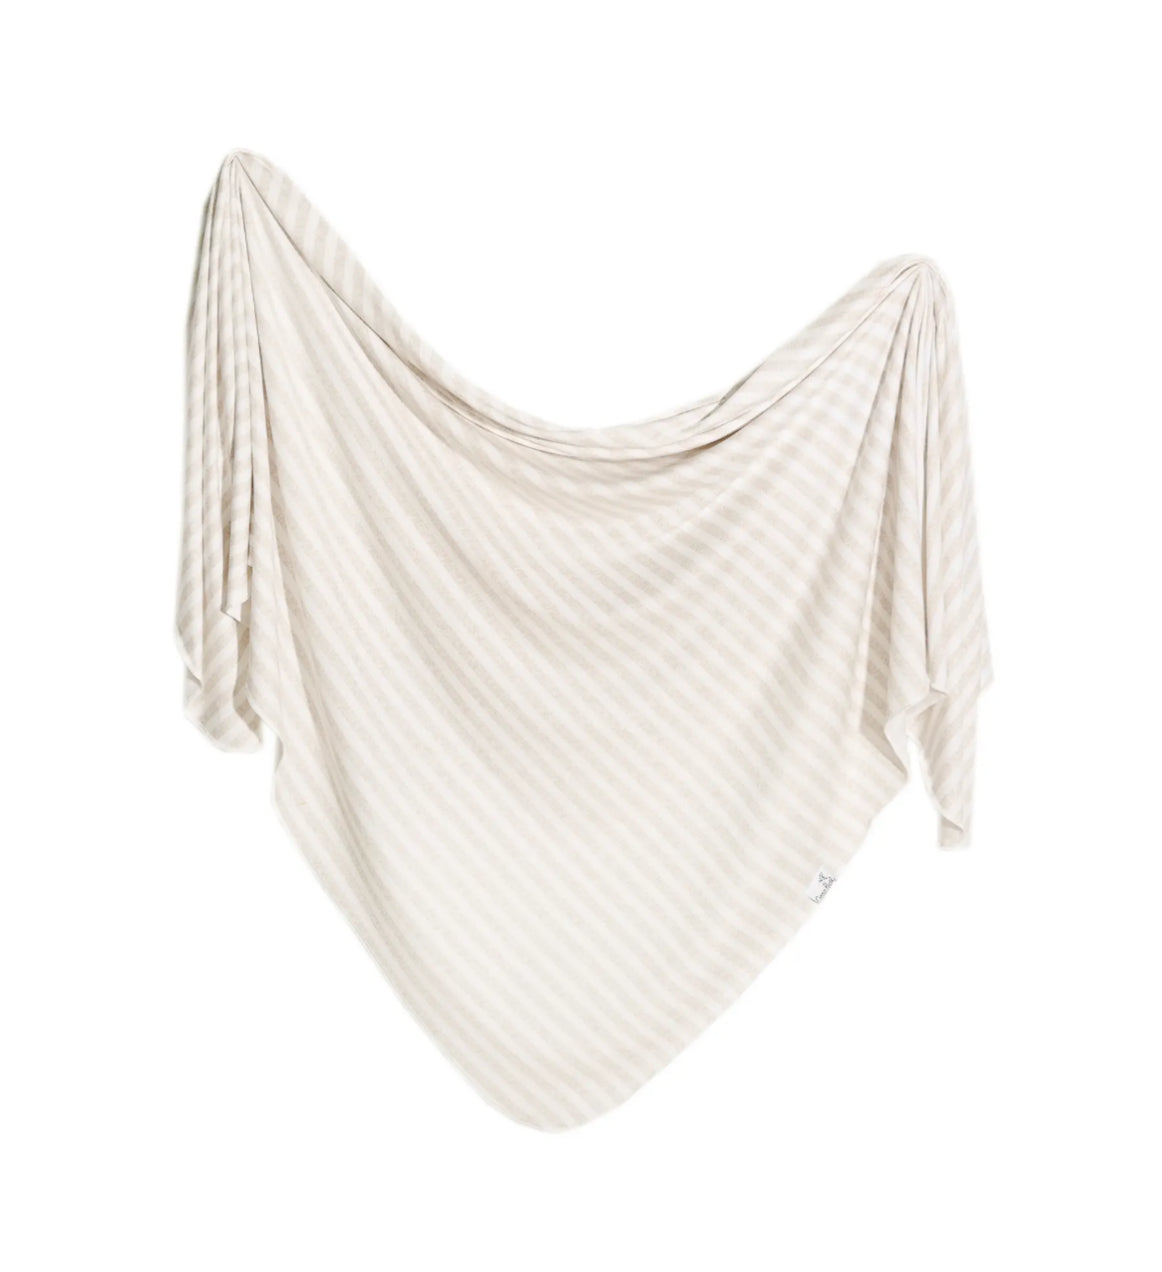 Knit Swaddle Blanket - Coastal